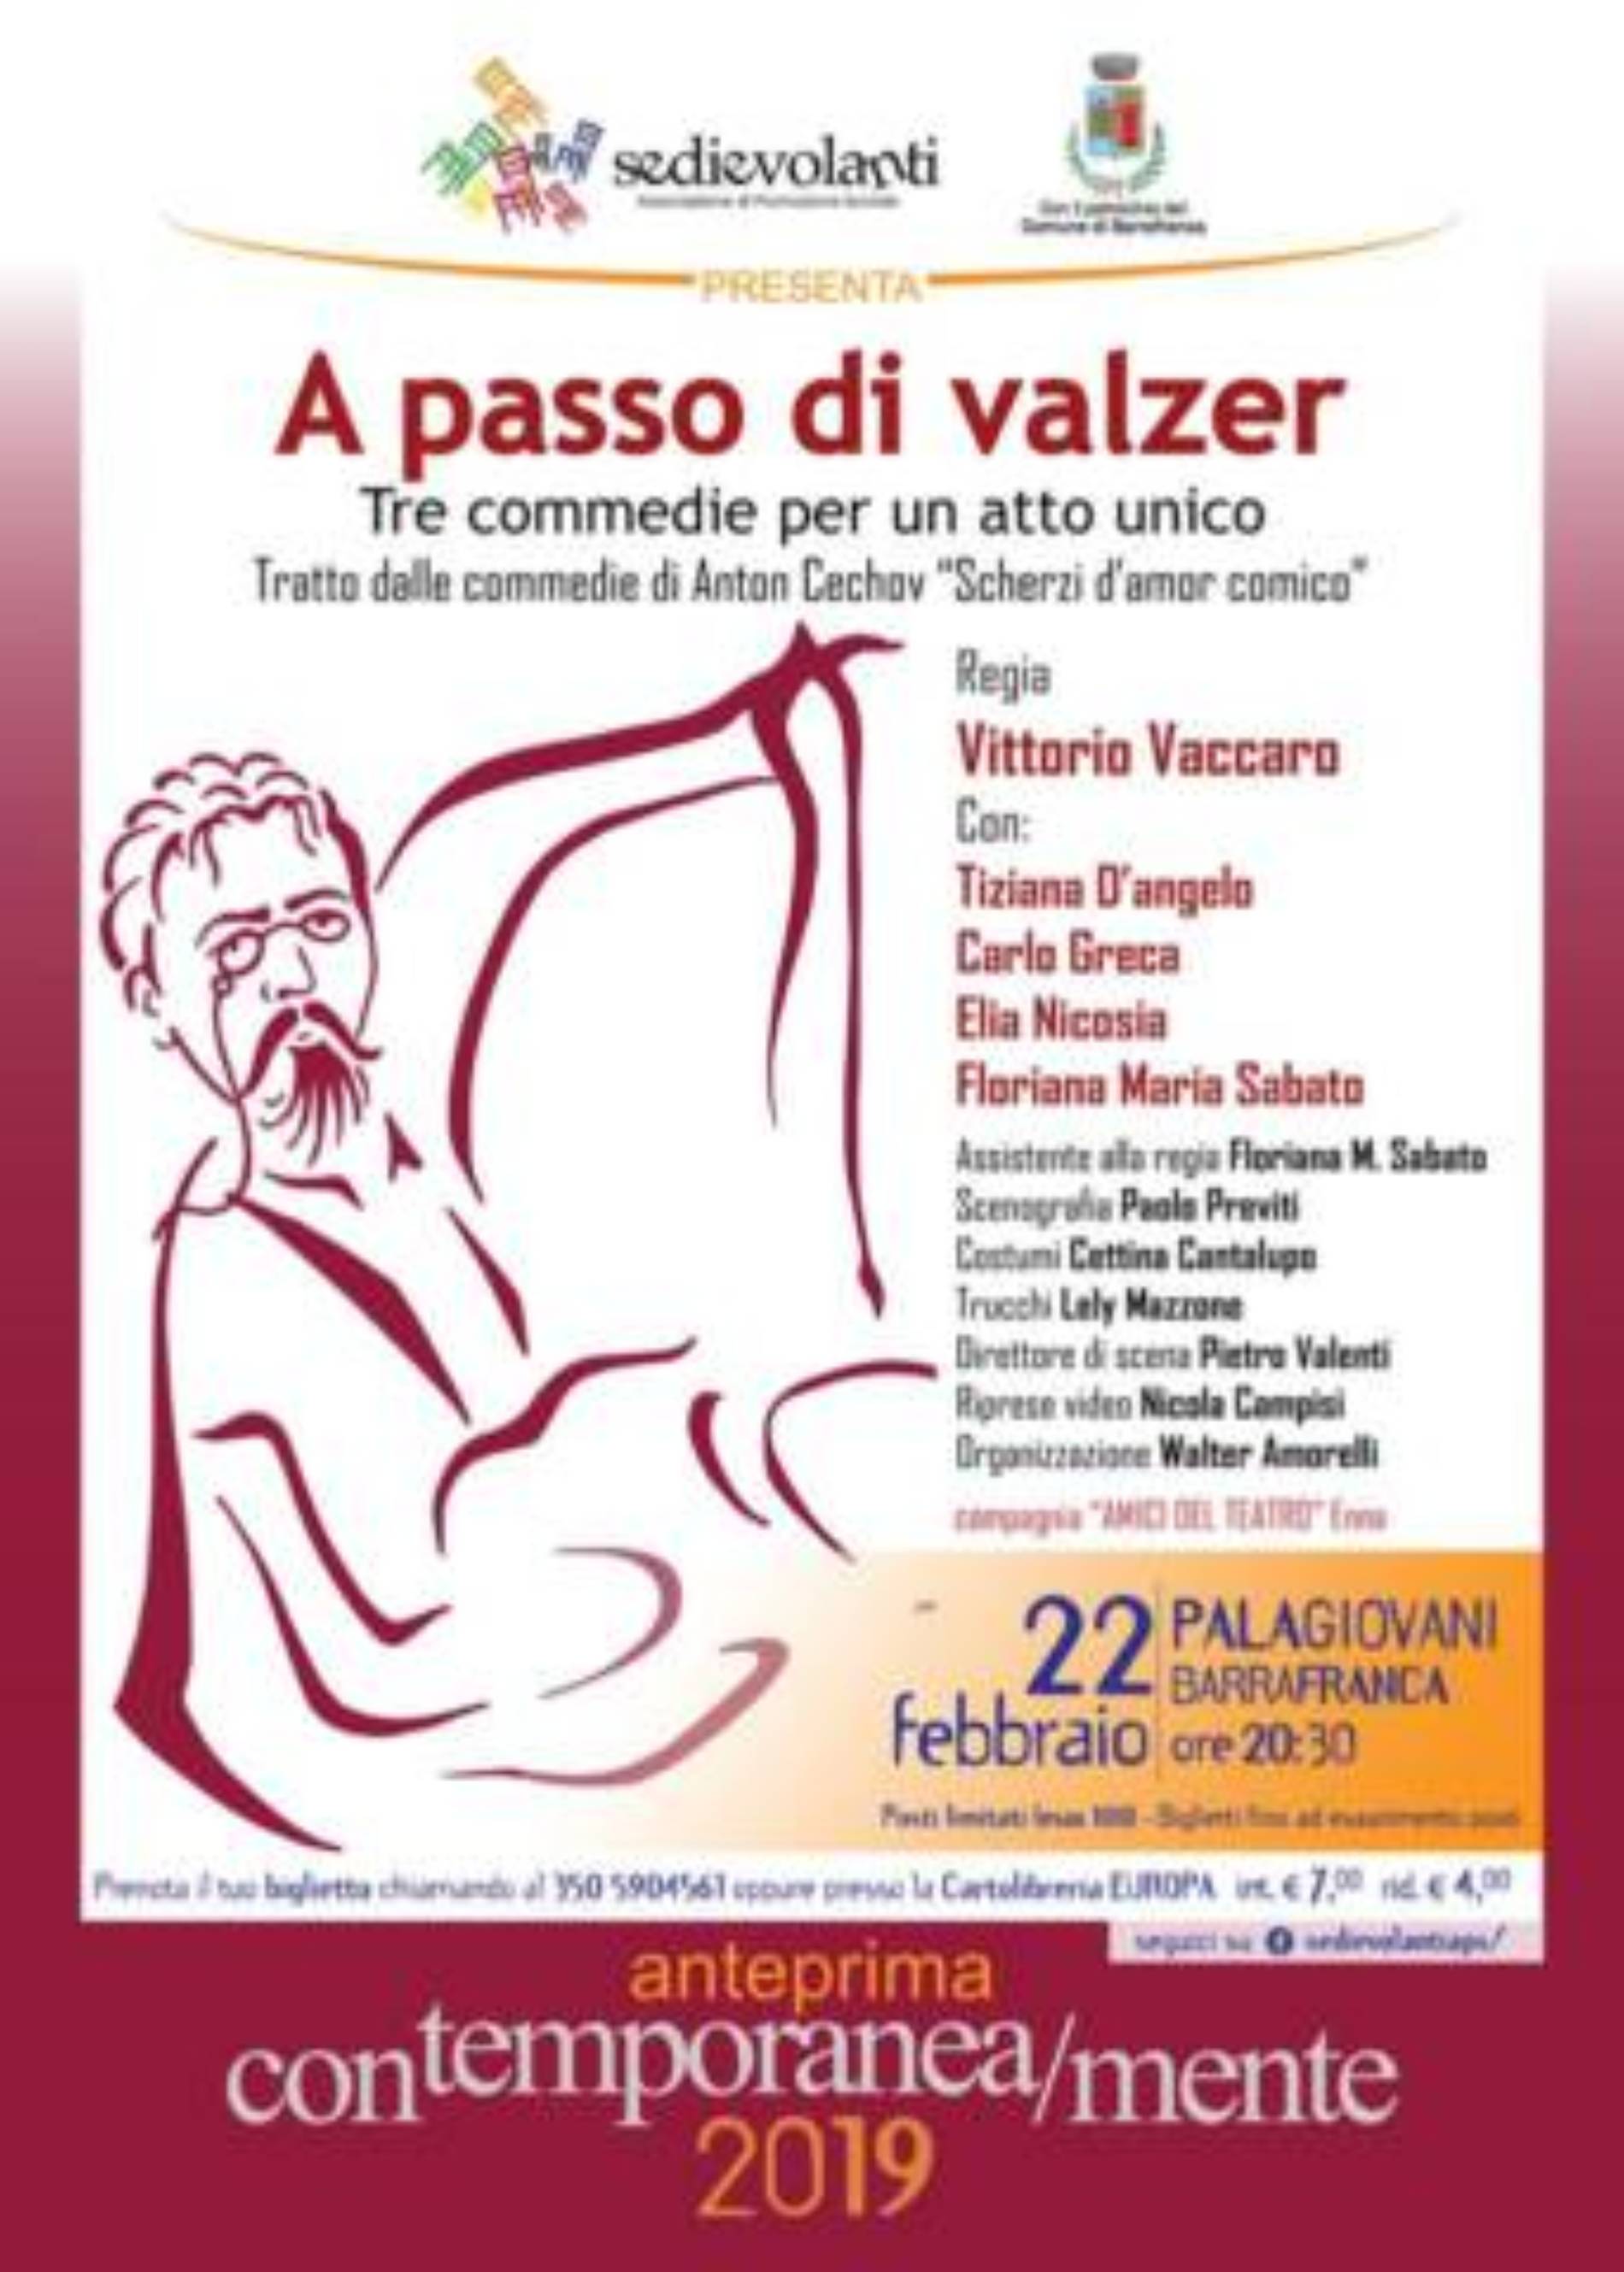 Venerdì 22 febbraio al Palagiovani di Barrafranca in scena “A passo di valzer” con la regia di Vittorio Vaccaro